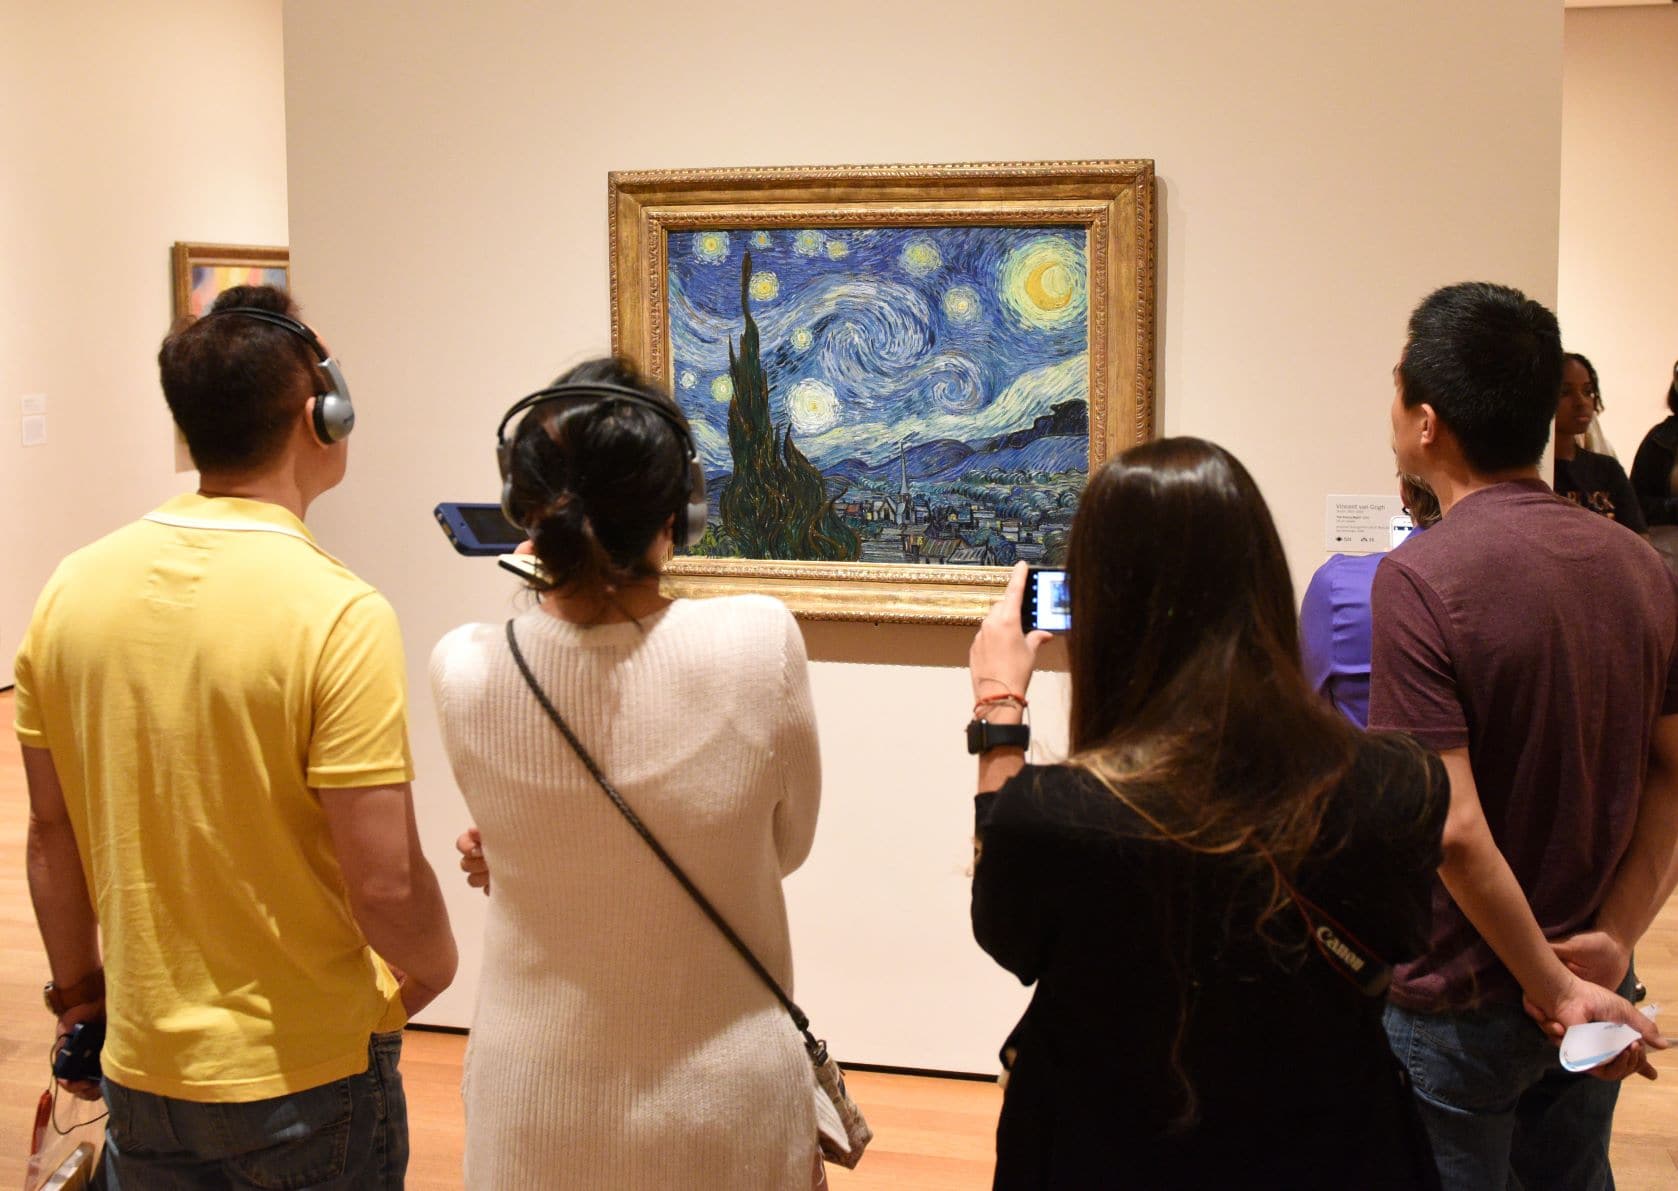 Sternennacht von Gogh